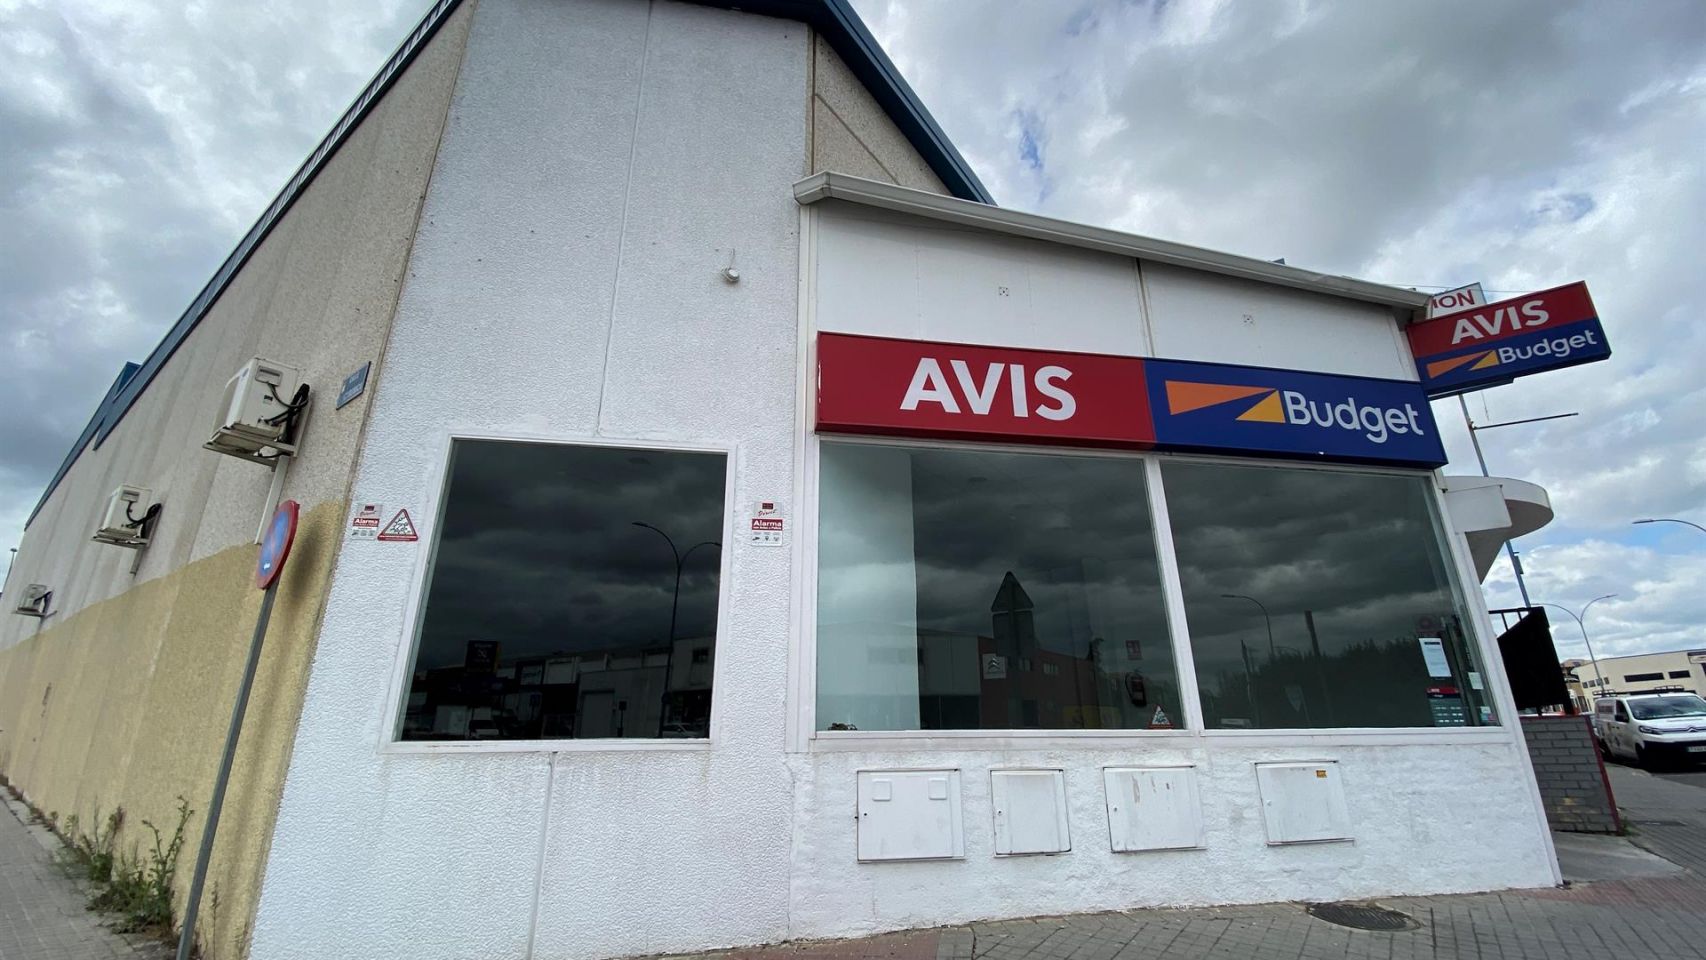 Oficinas de la empresa de alquiler de vehículos Avis.